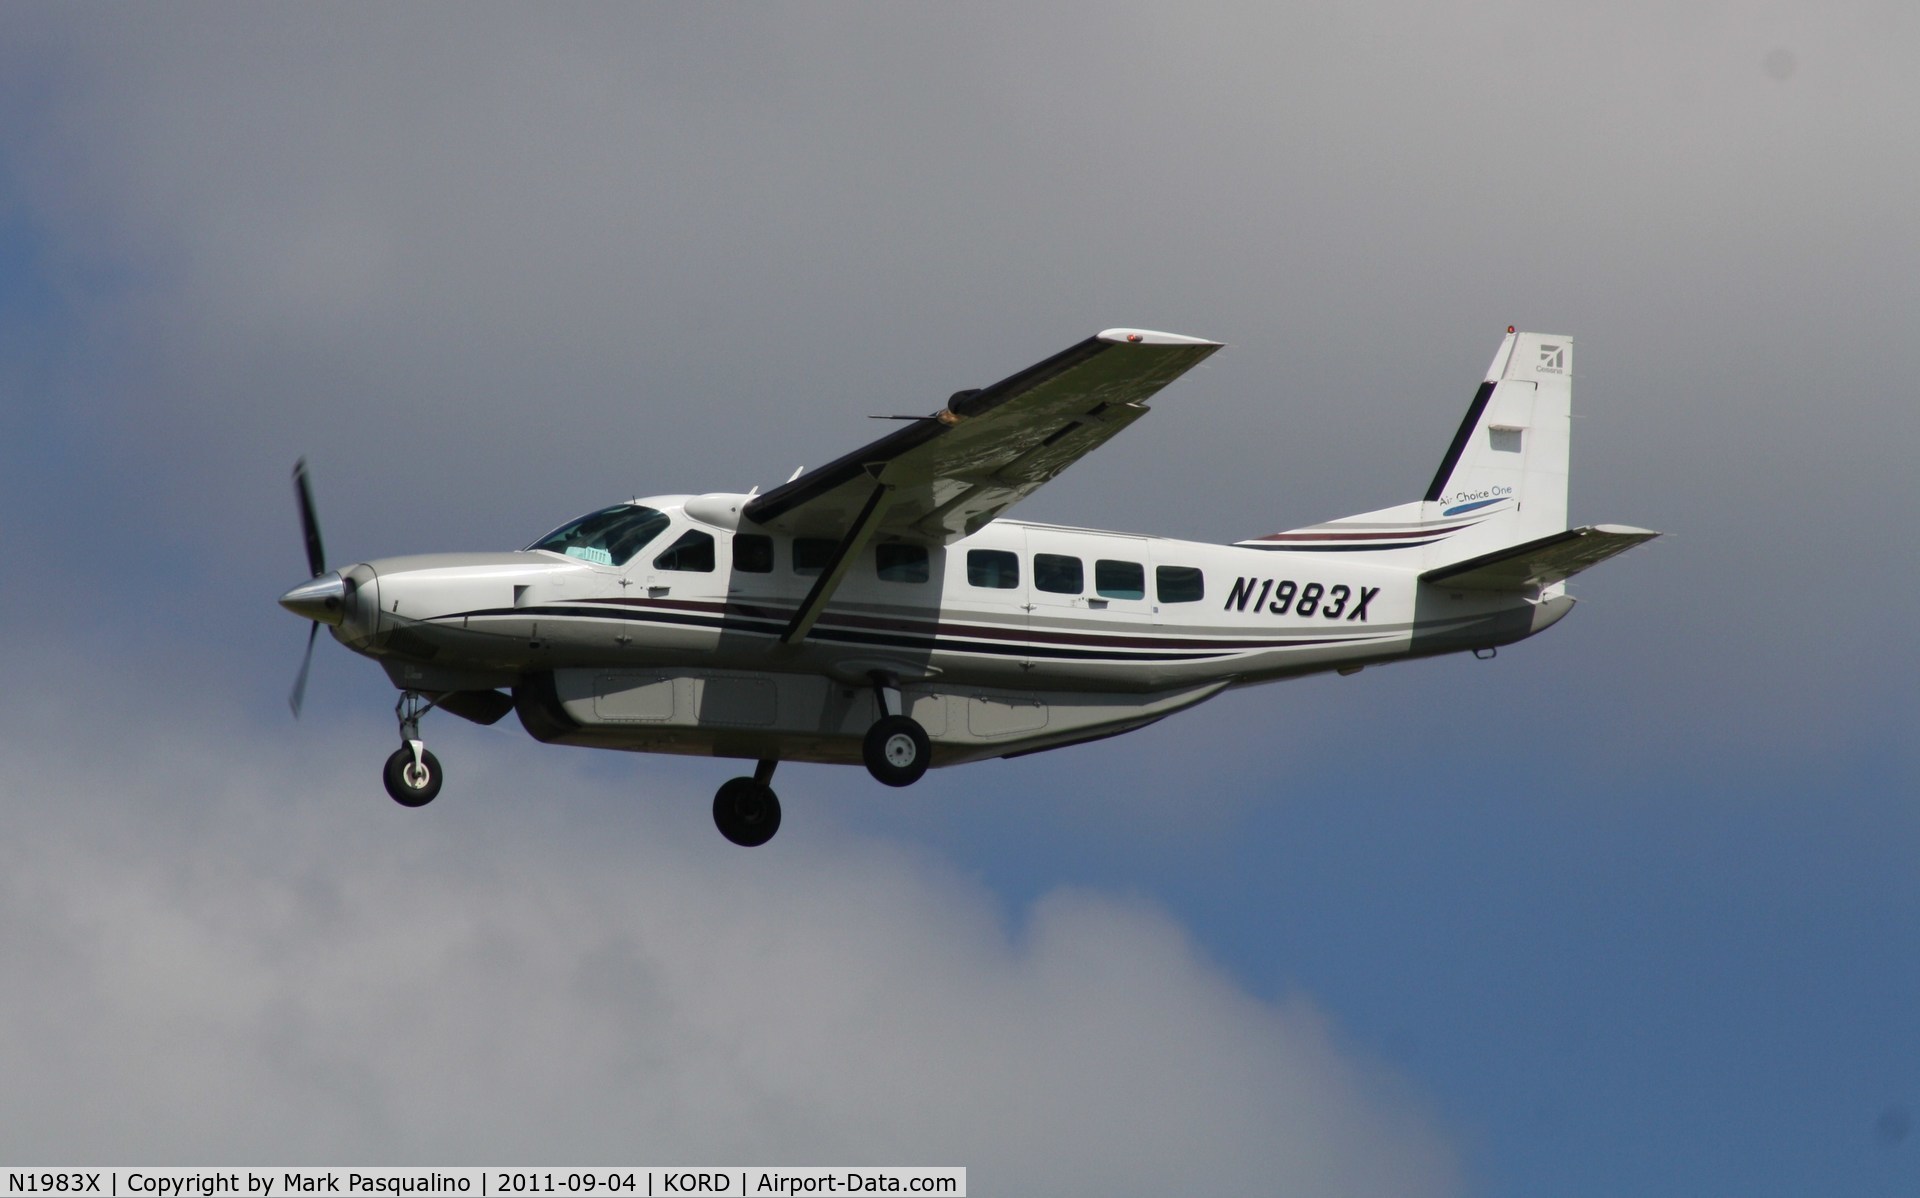 N1983X, 2003 Cessna 208B Grand Caravan C/N 208B1013, Cessna 208B